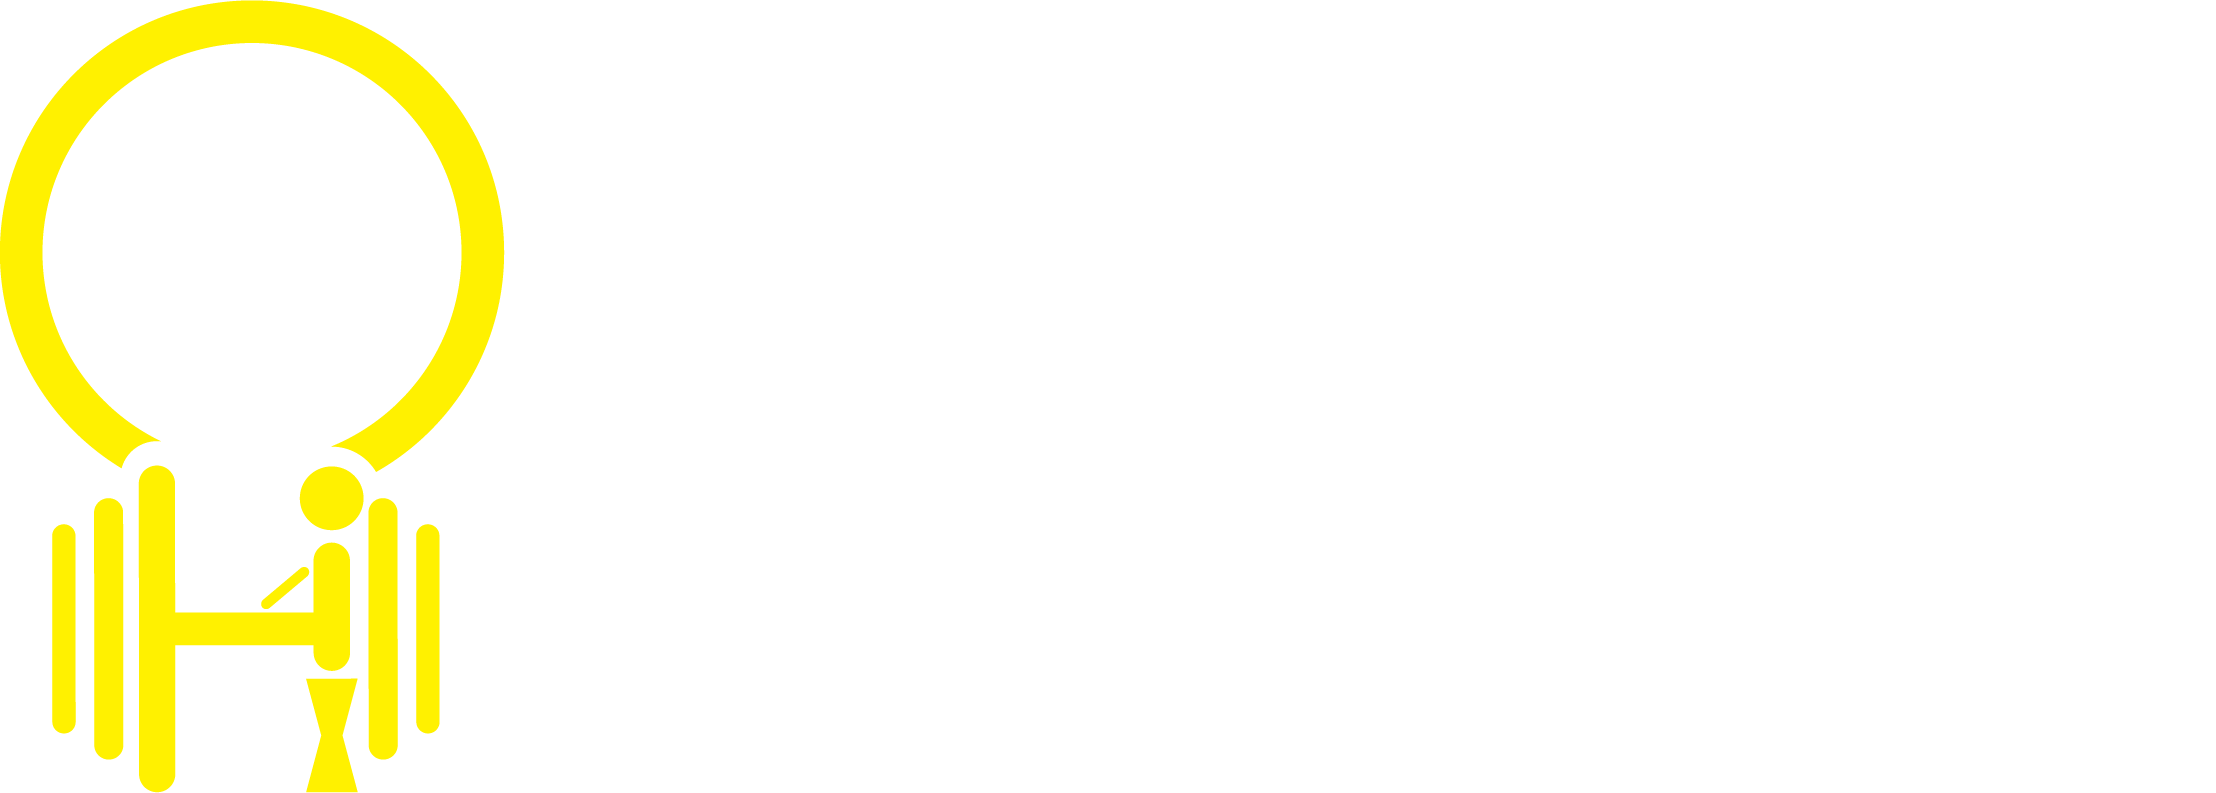 HackWork技术工坊